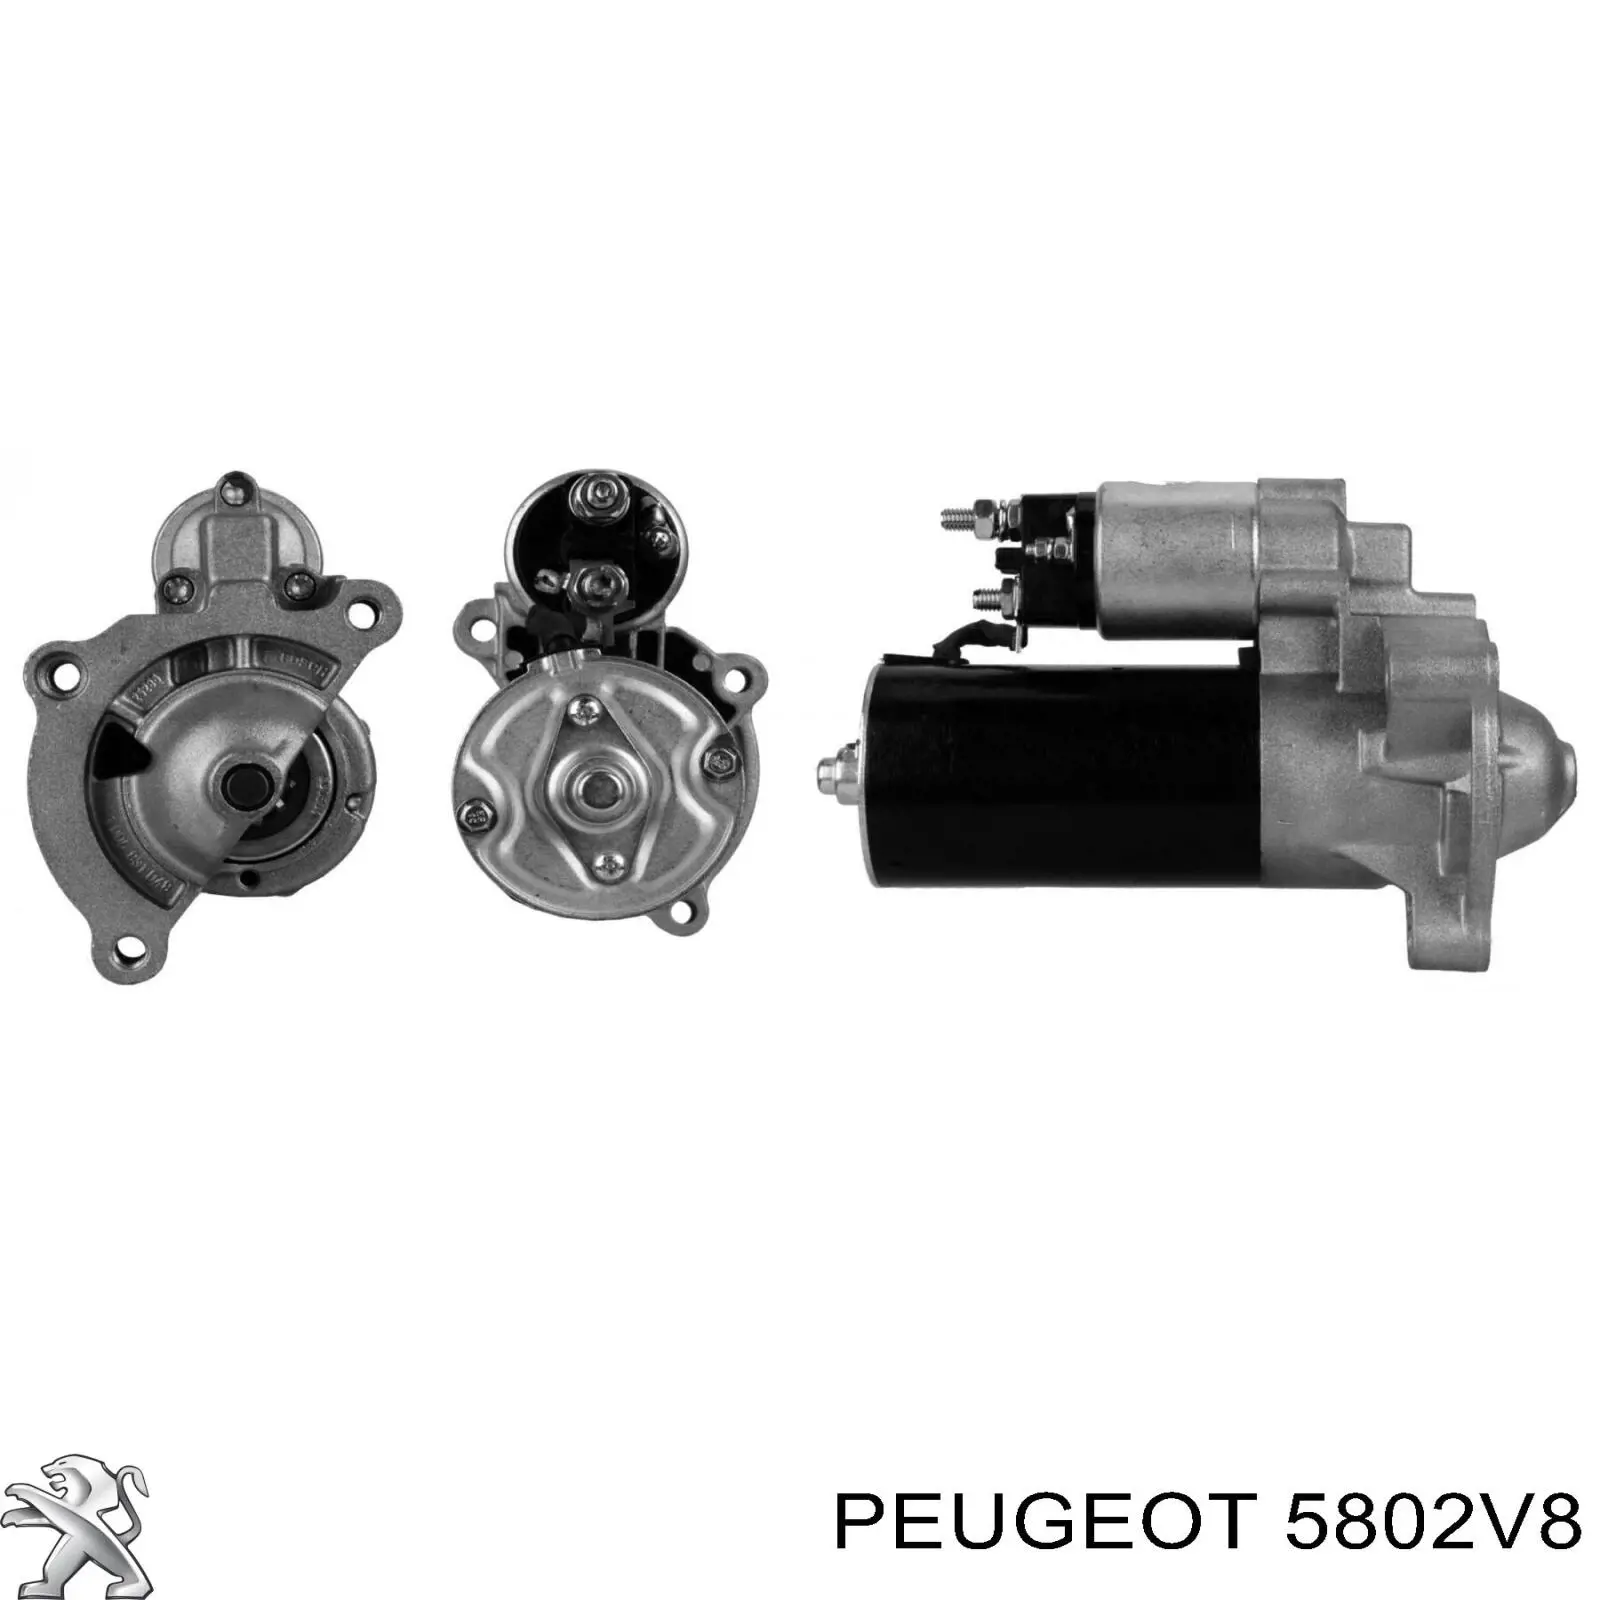 5802V8 Peugeot/Citroen motor de arranque